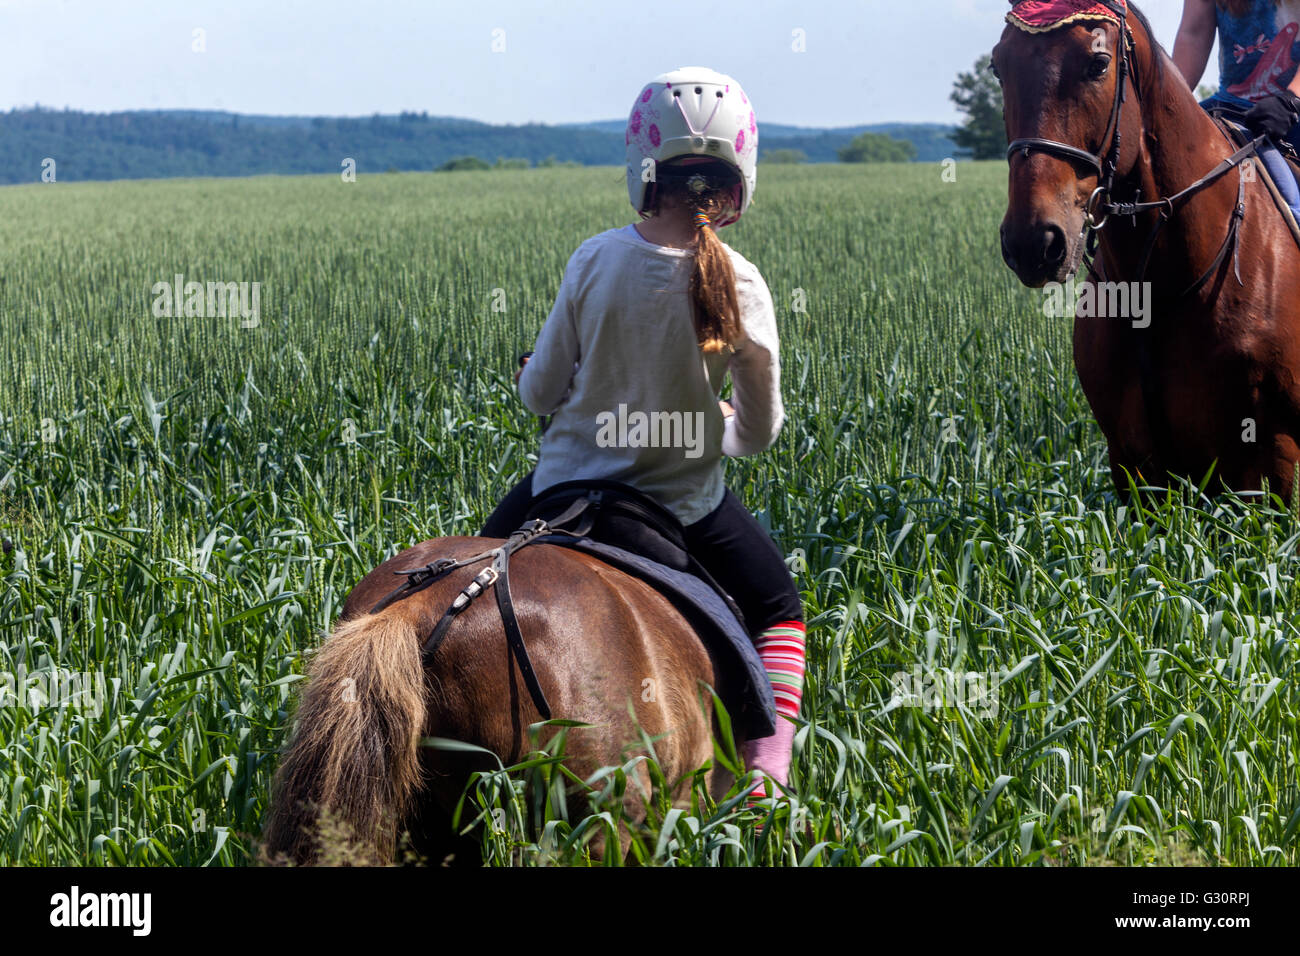 Reiten Sommer Landschaft junge Mädchen mit Pferden auf einer Wiese Stockfoto